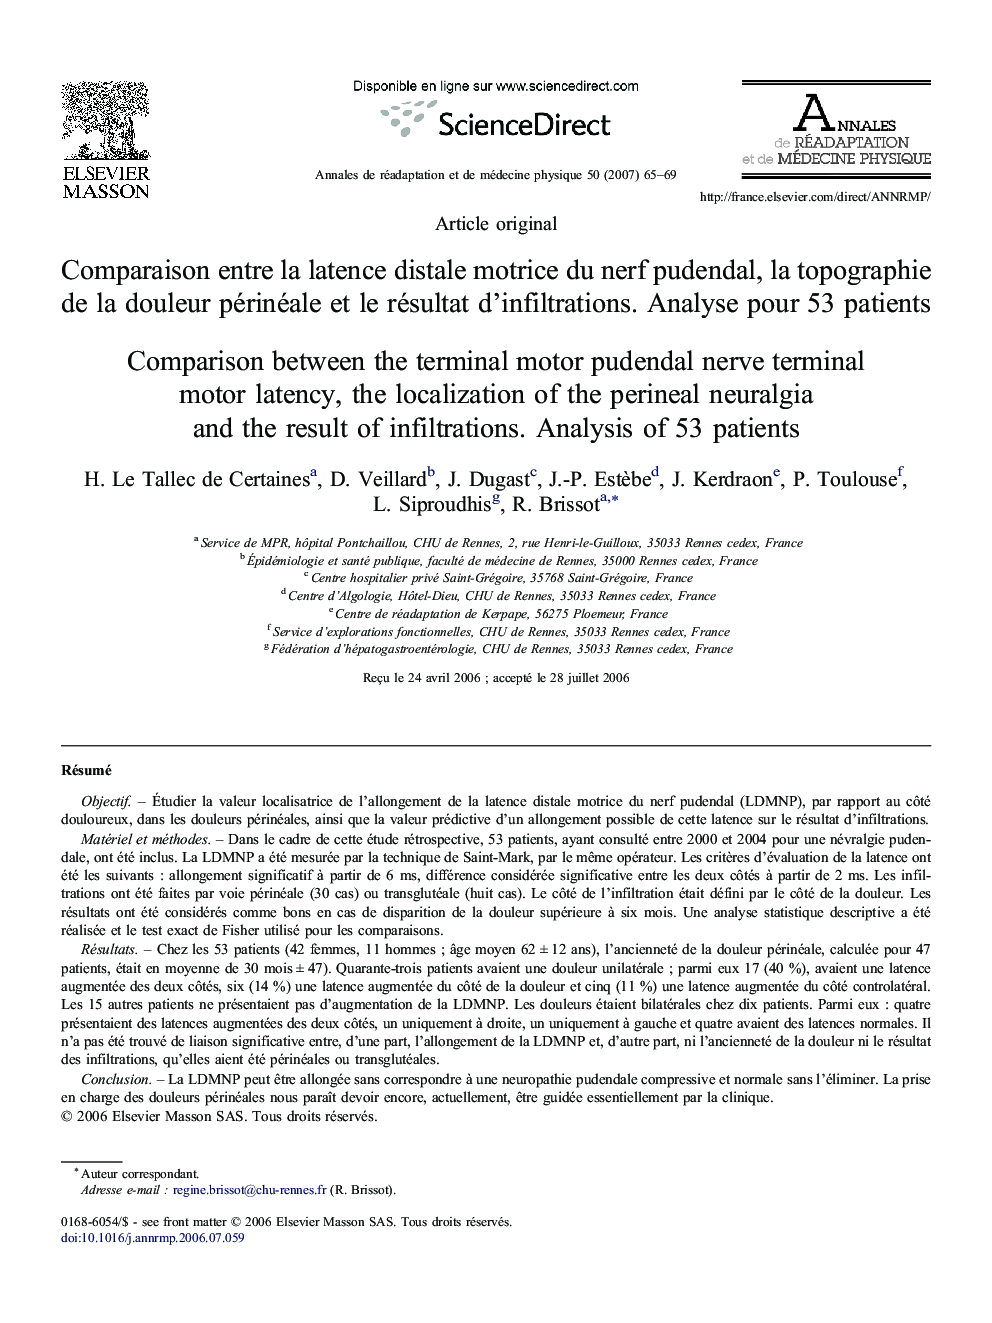 Comparaison entre la latence distale motrice du nerf pudendal, la topographie de la douleur périnéale et le résultat d'infiltrations. Analyse pour 53 patients